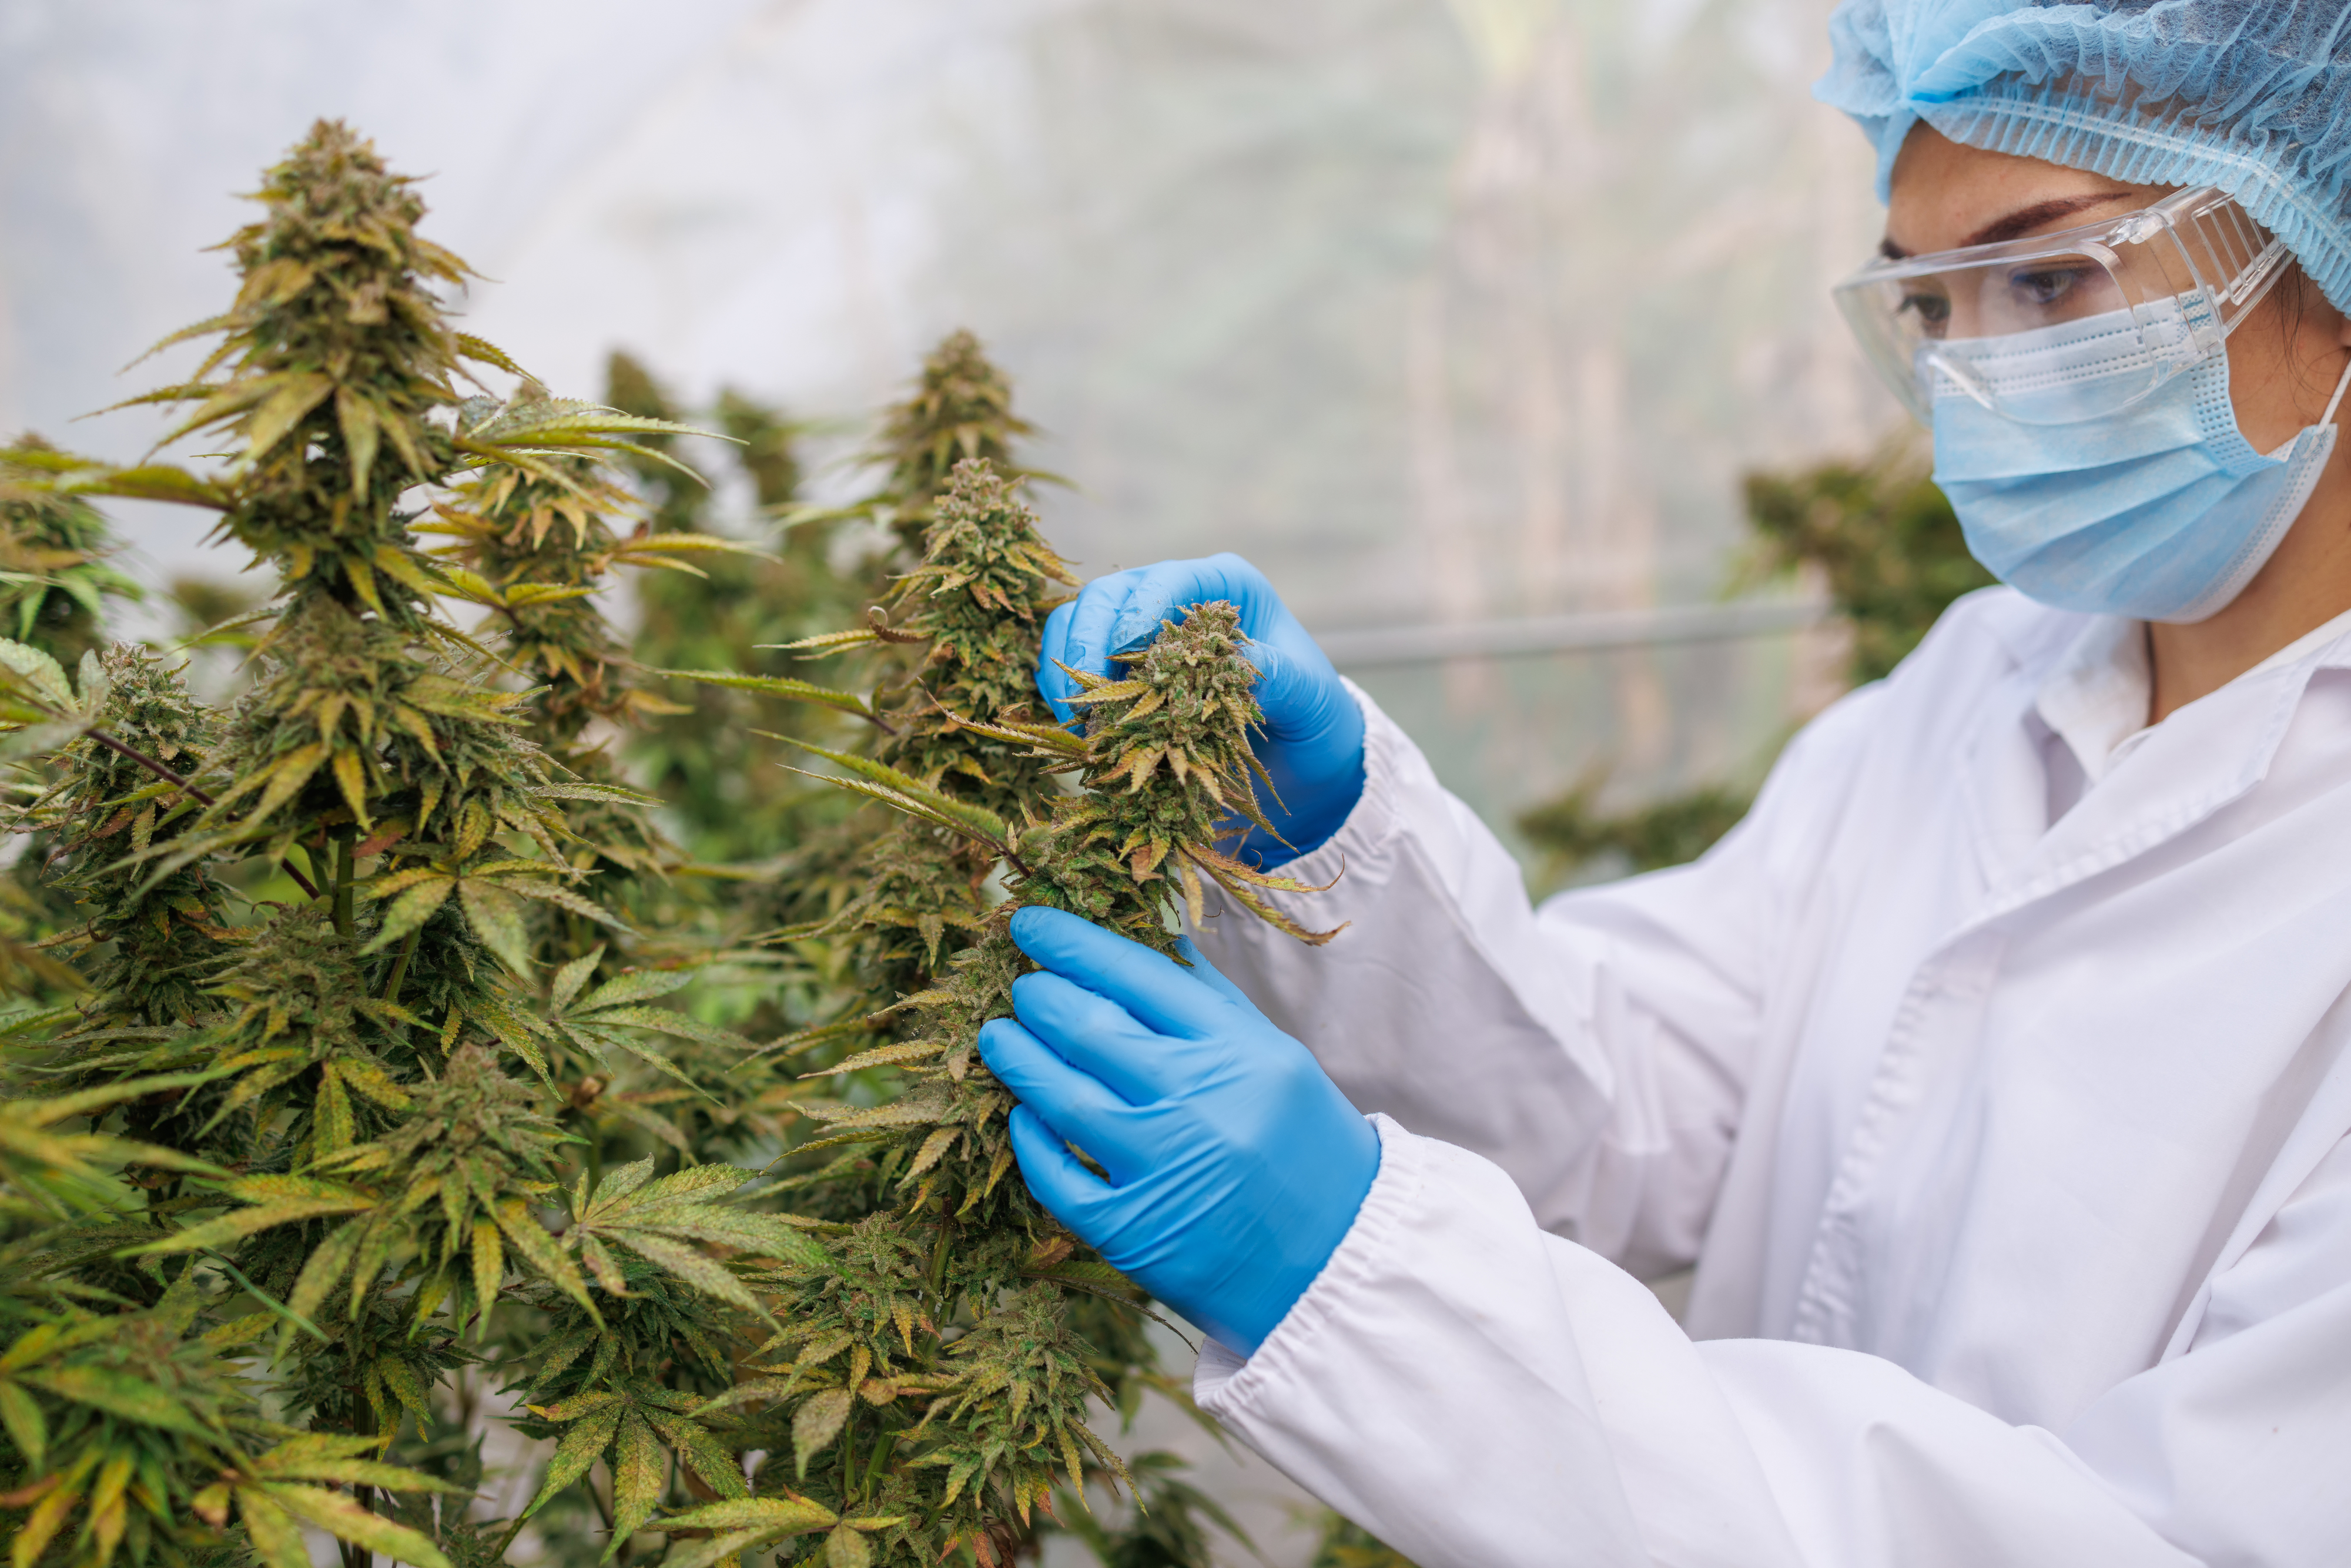 A woman scientist examining a cannabis plant